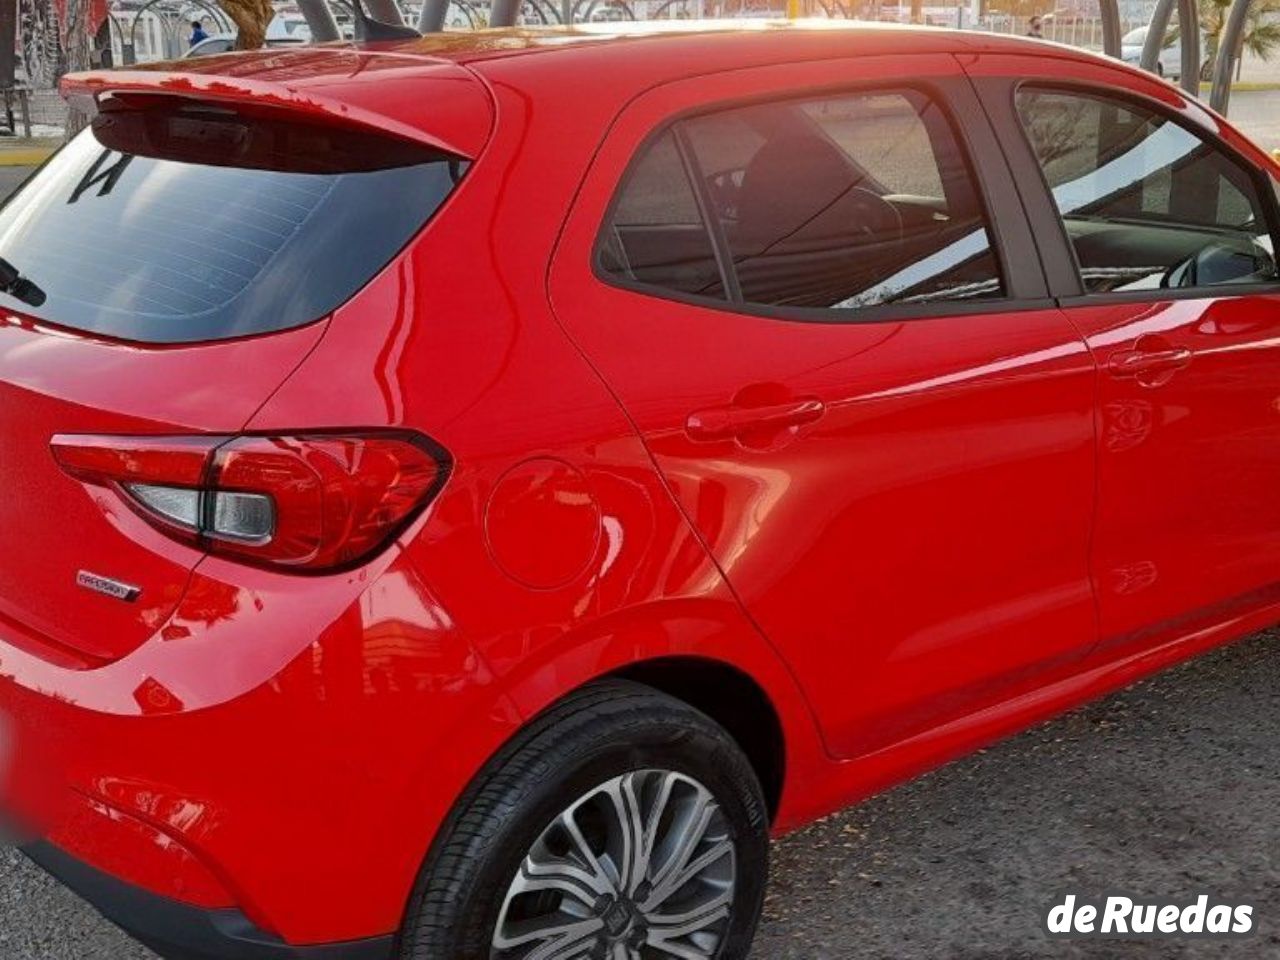 Fiat Argo Nuevo en San Juan, deRuedas